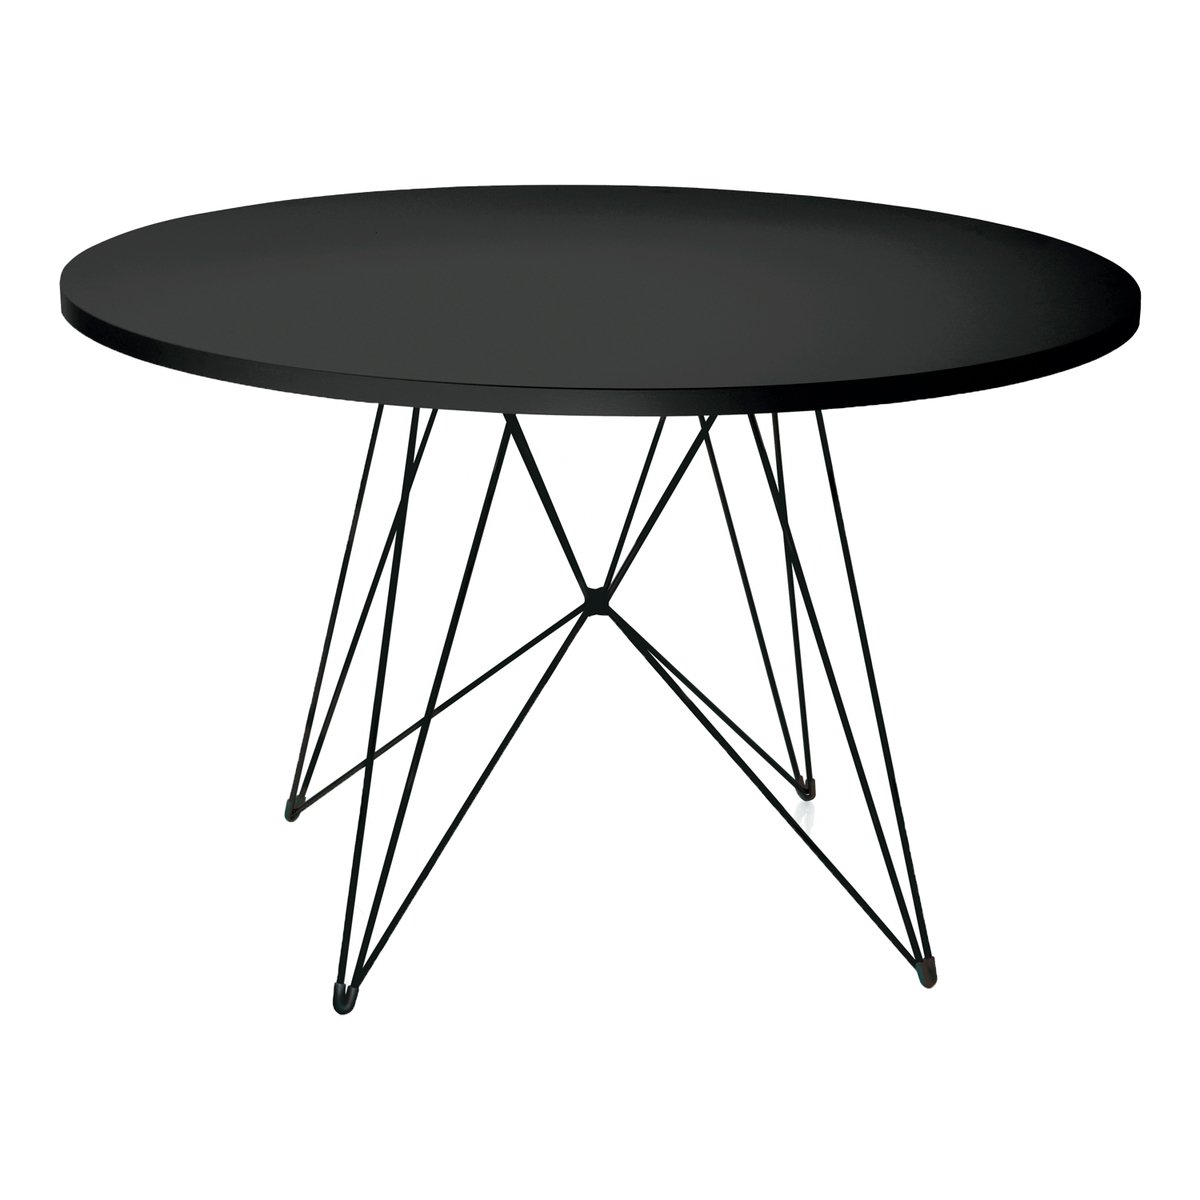 Столик пнг. Столик круглый. Стол круглый черный. Черный круглый столик. Стол кухонный круглый черный.